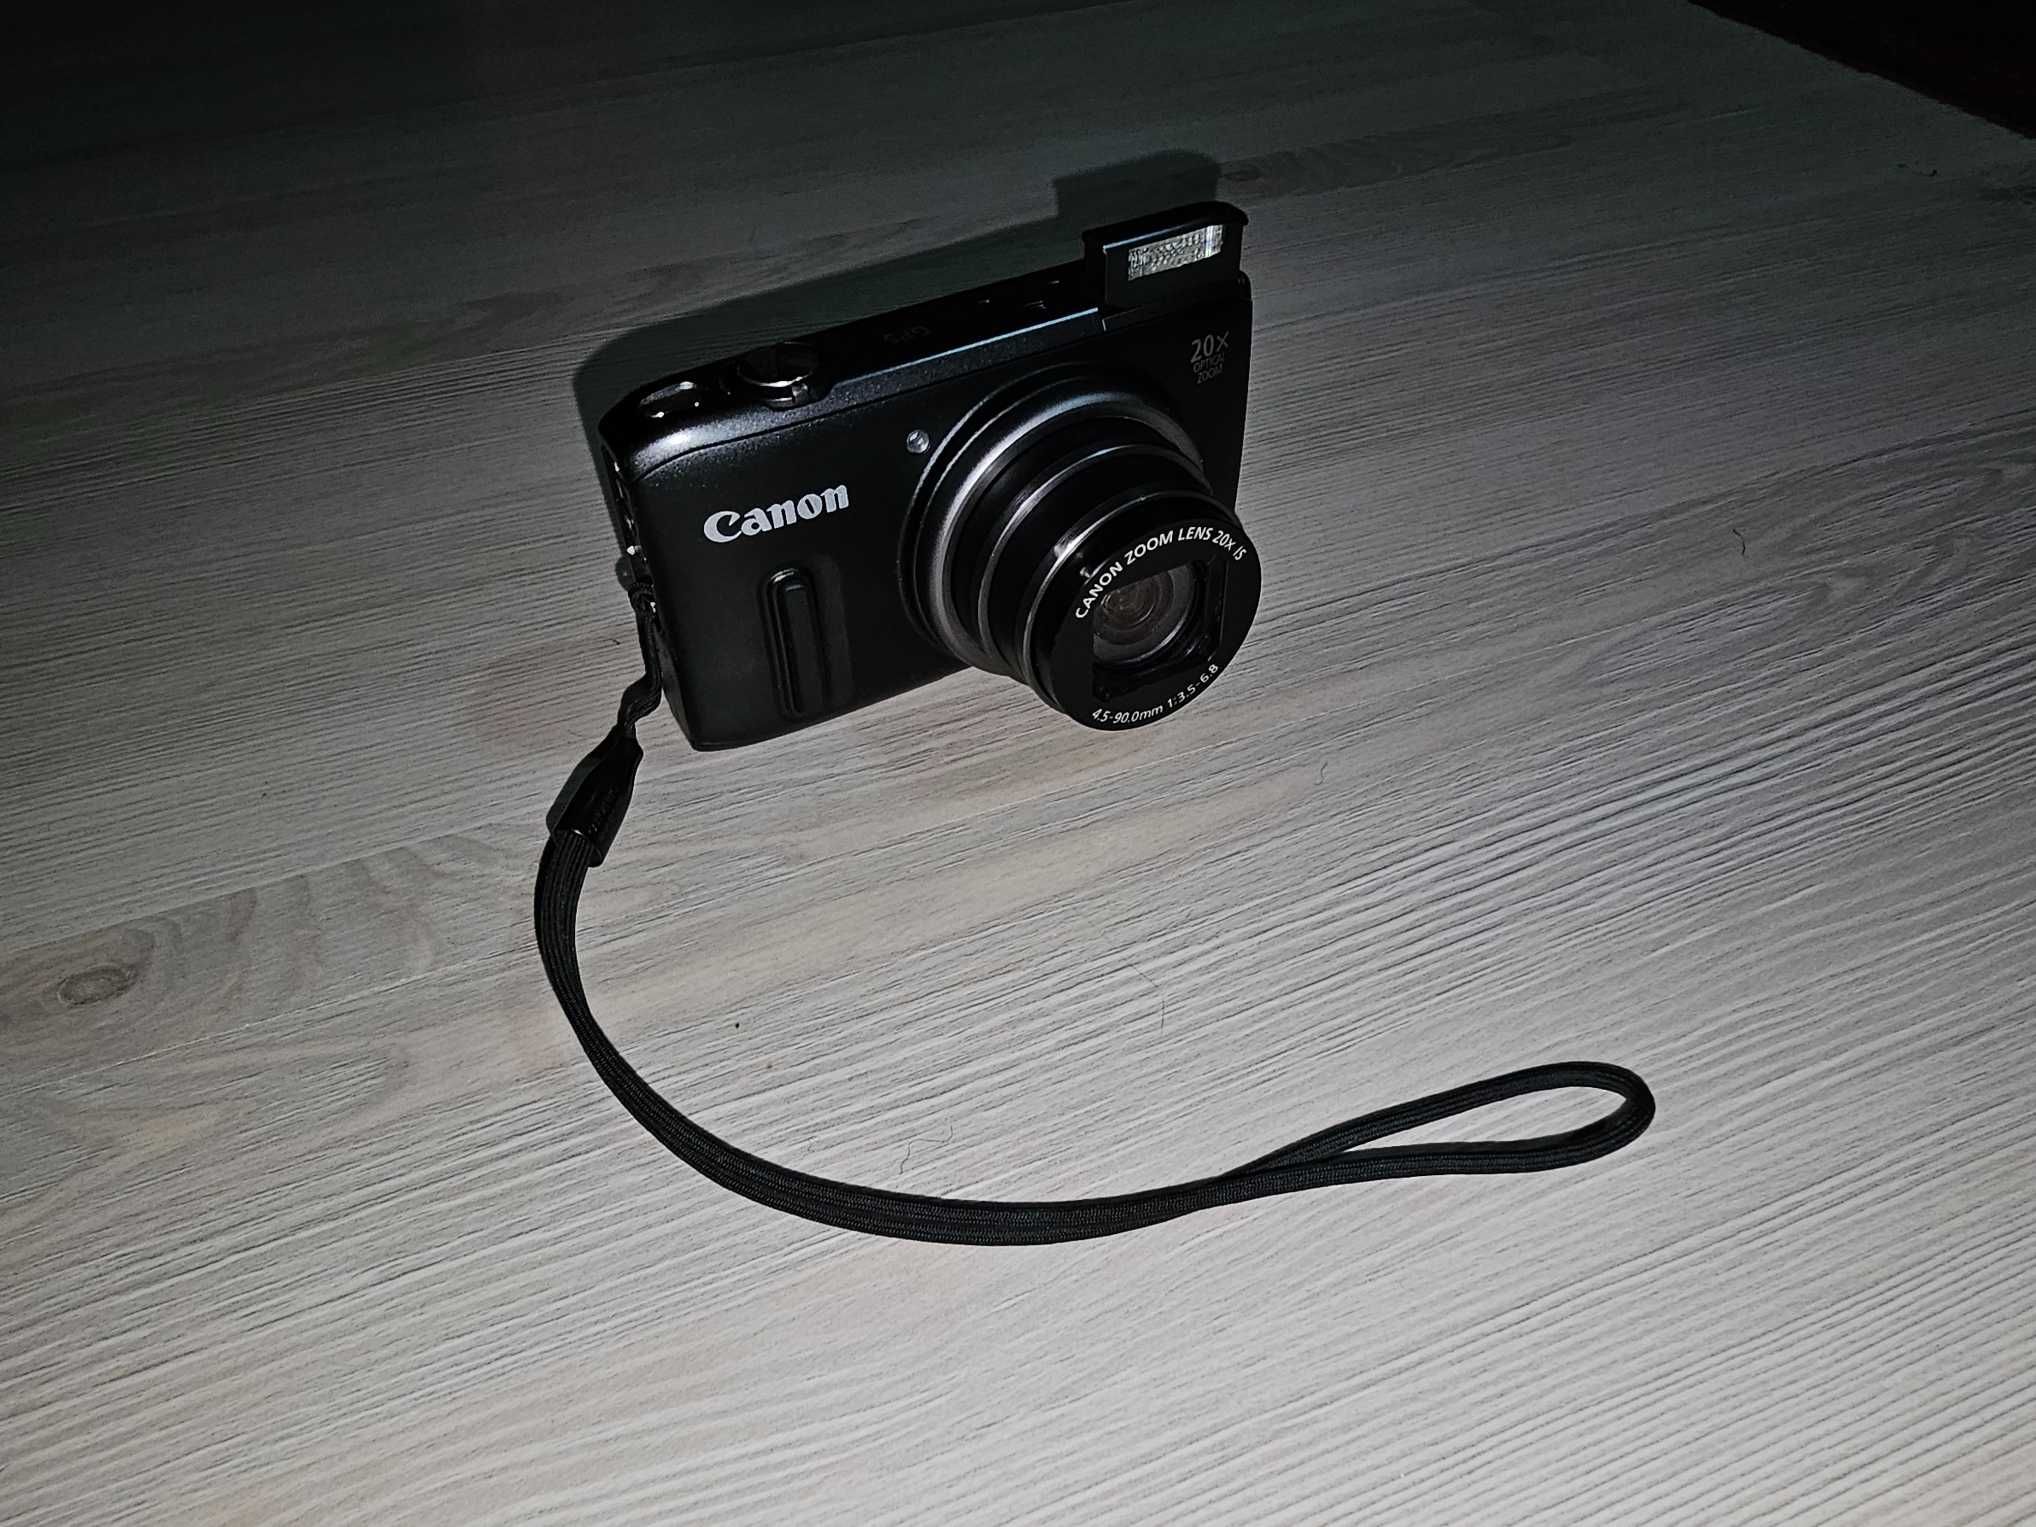 Canon PowerShot SX260 HS 12.1MP